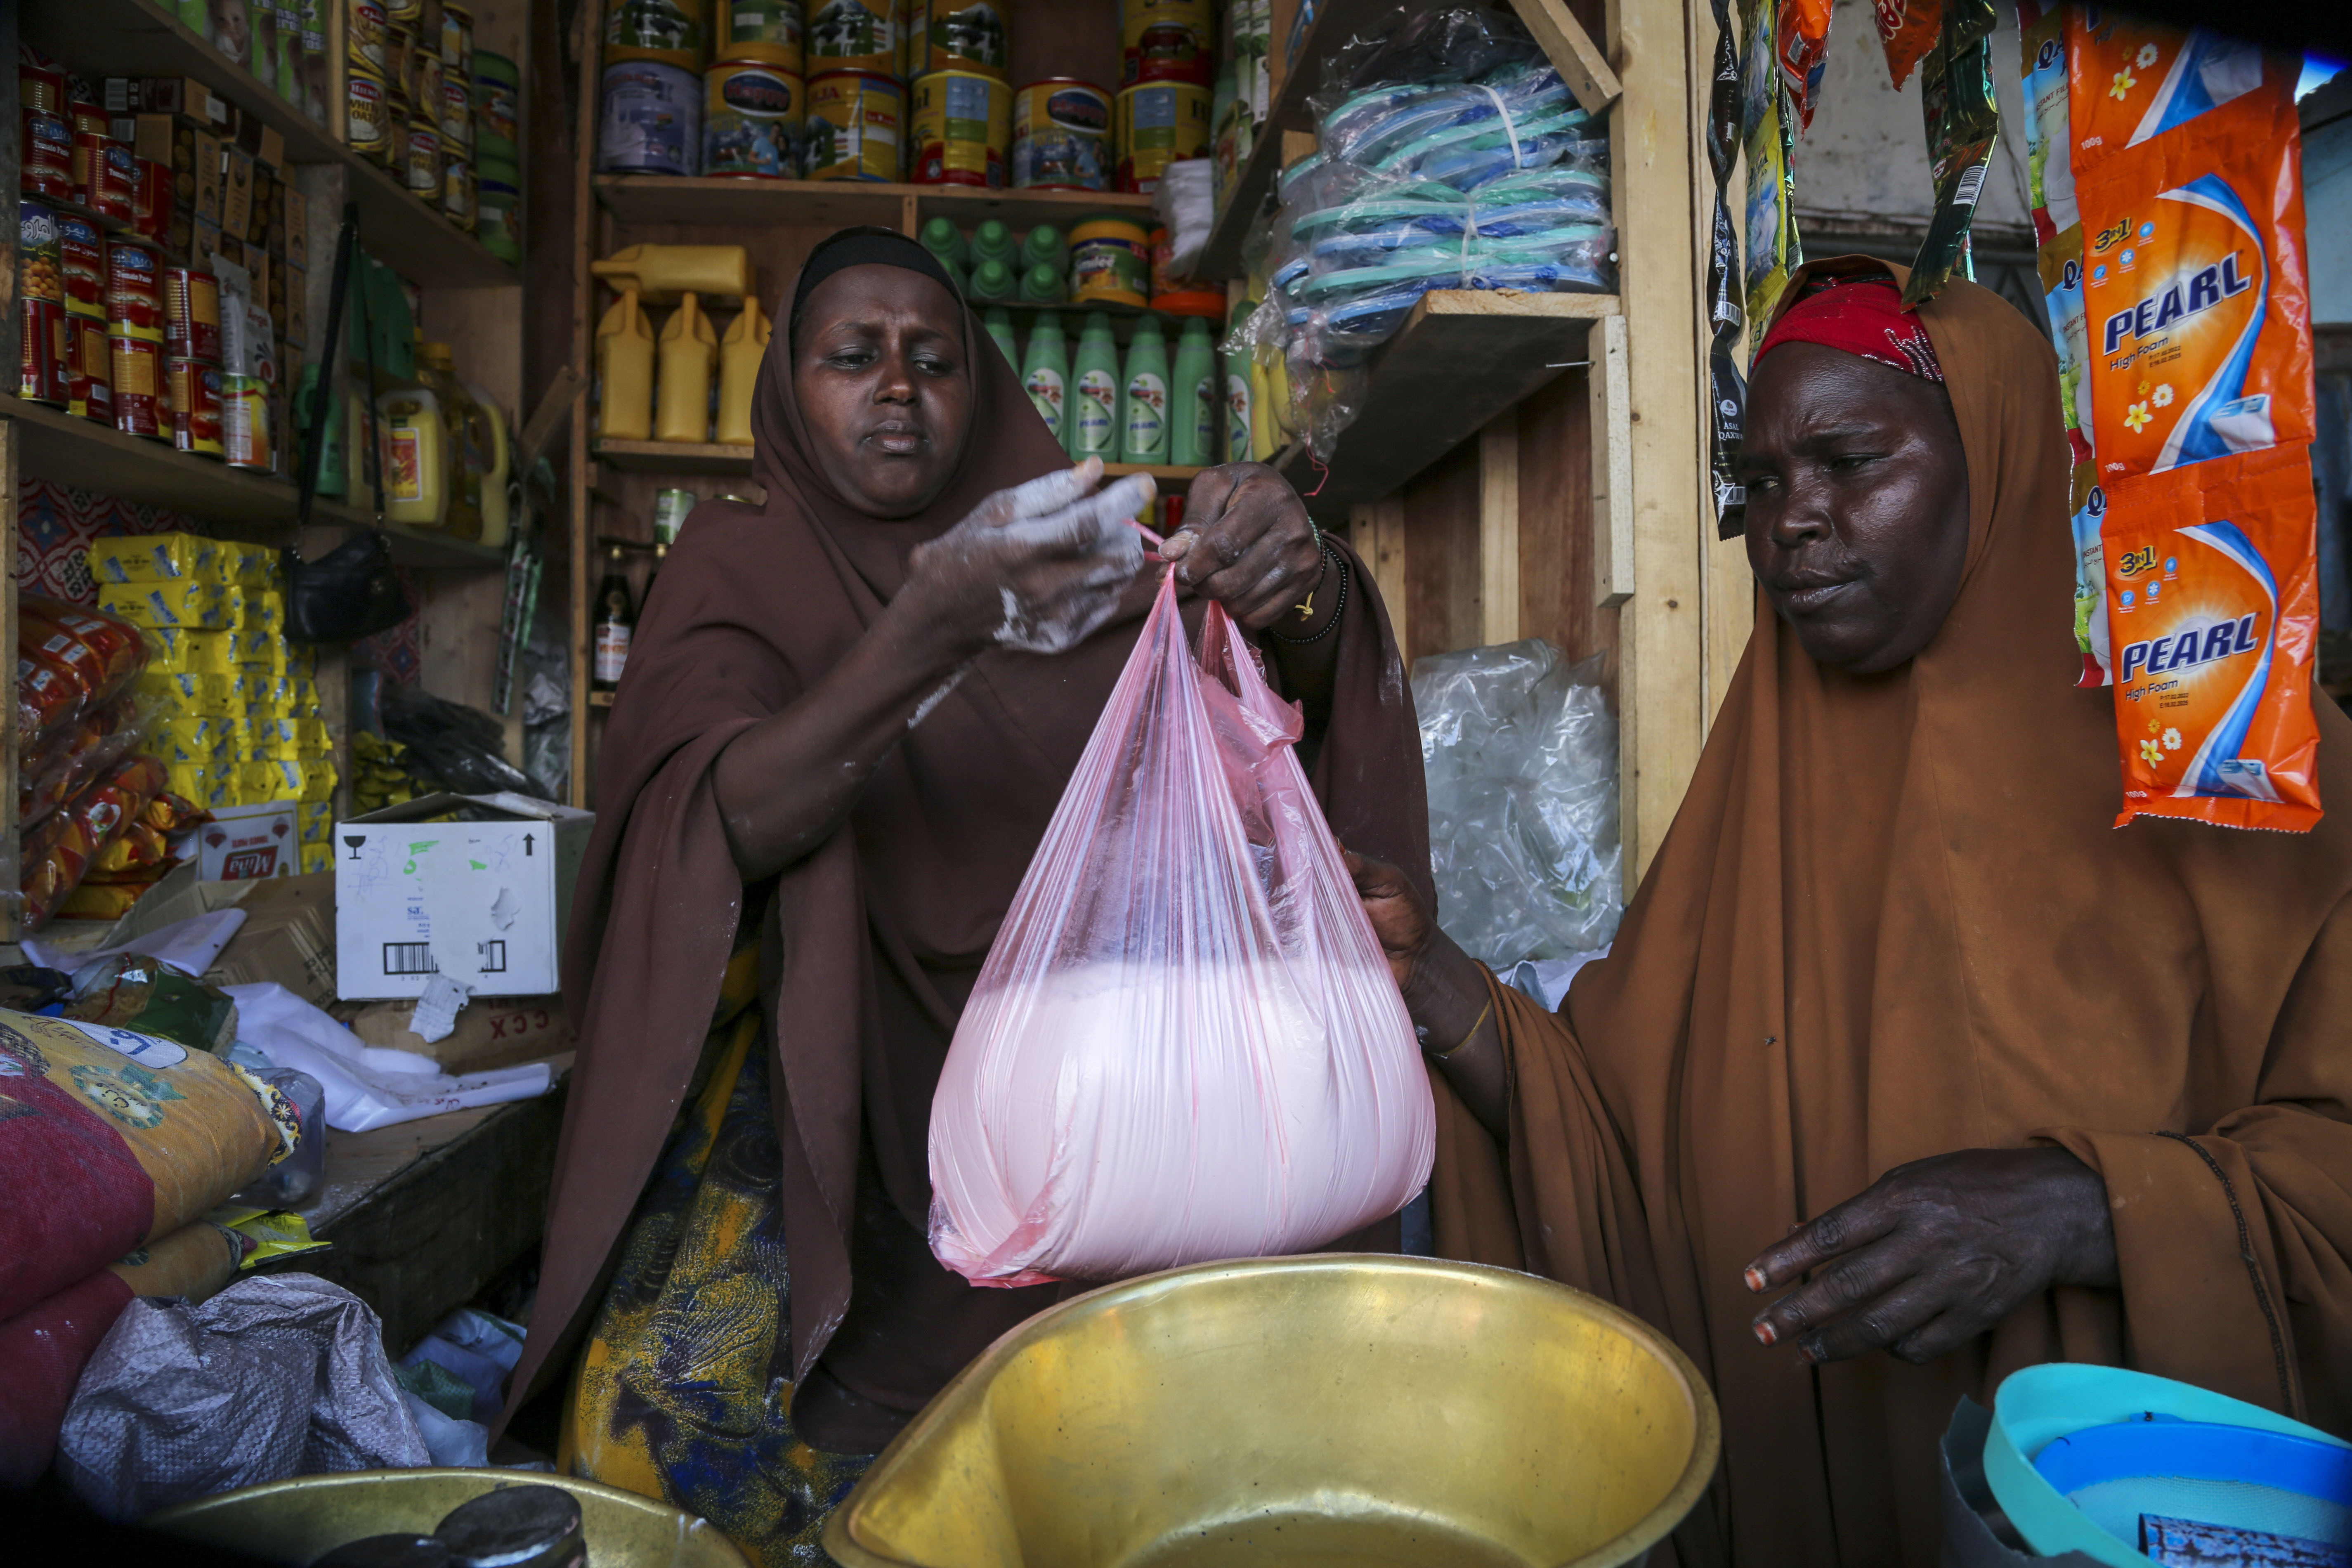 러시아-우크라이나 전쟁이 시작된지 100일째이다. 아프리카 주민들은 전보다 45%에 오른 가격에 밀가루를 구입하고 있다. 5월 26일 소말리아 수도 모가디슈의 한 상점에서 주민이 밀가루를 사는 모습이다. (사진/연합뉴스)